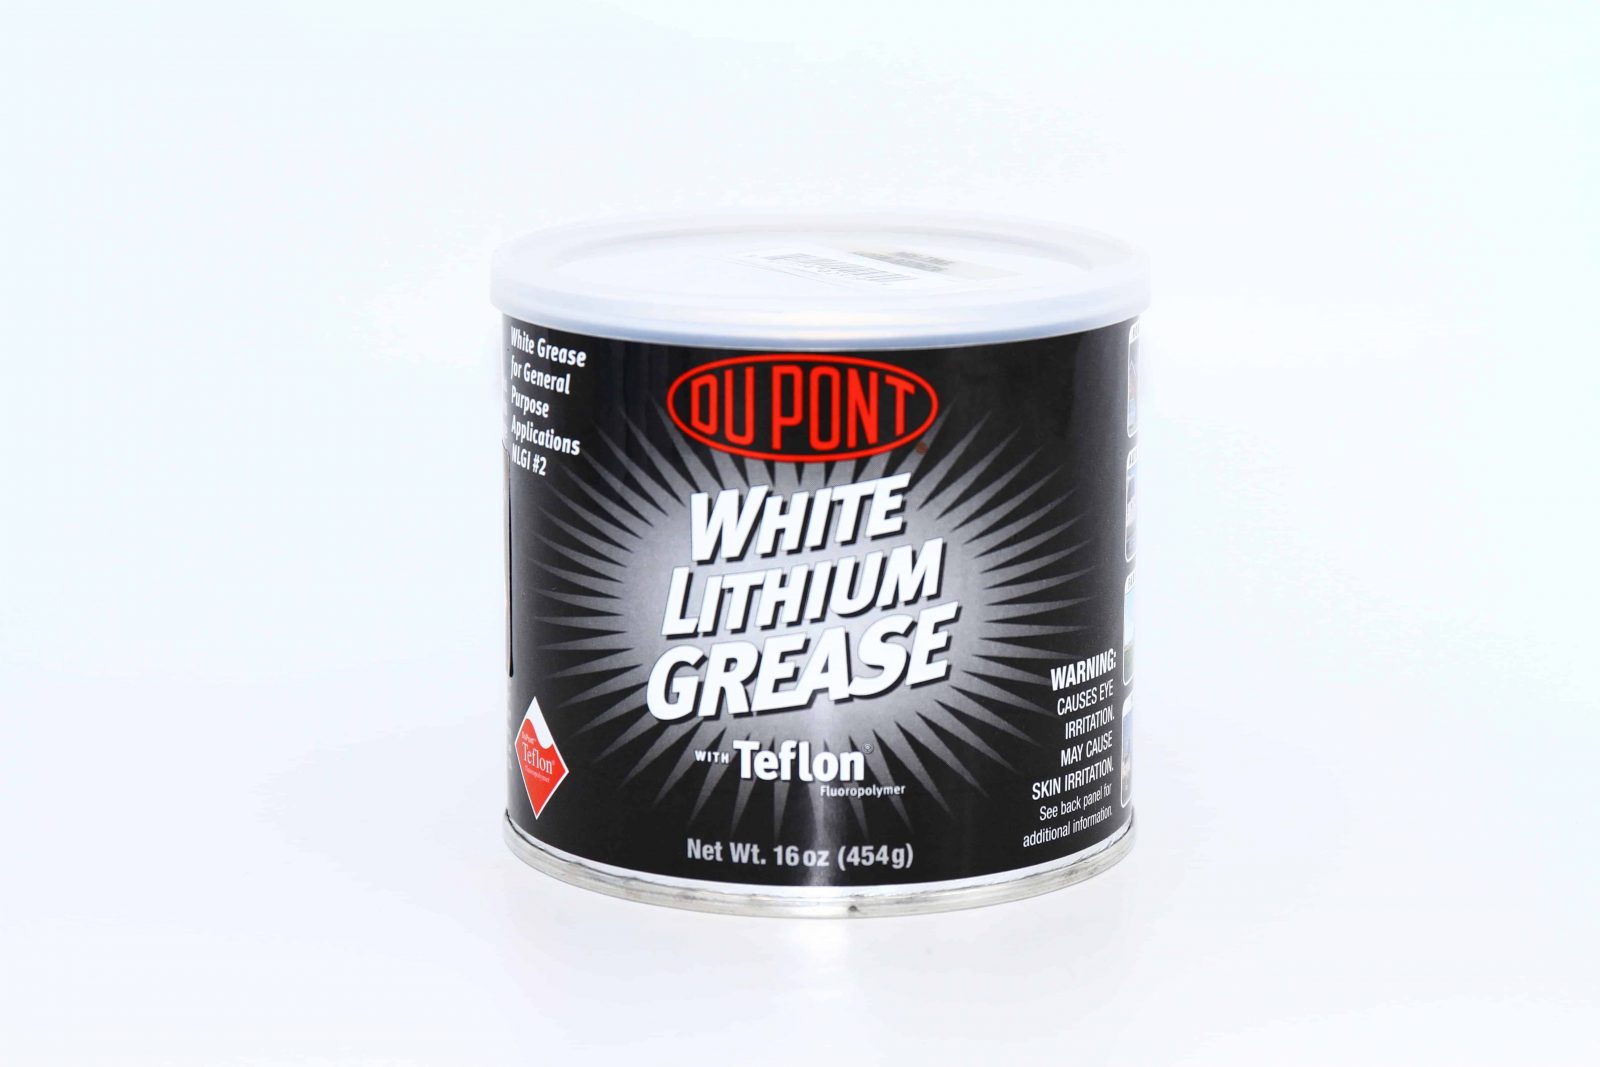 DuPont Teflon White Lithium Grease Aerosol Spray, 10 Oz.